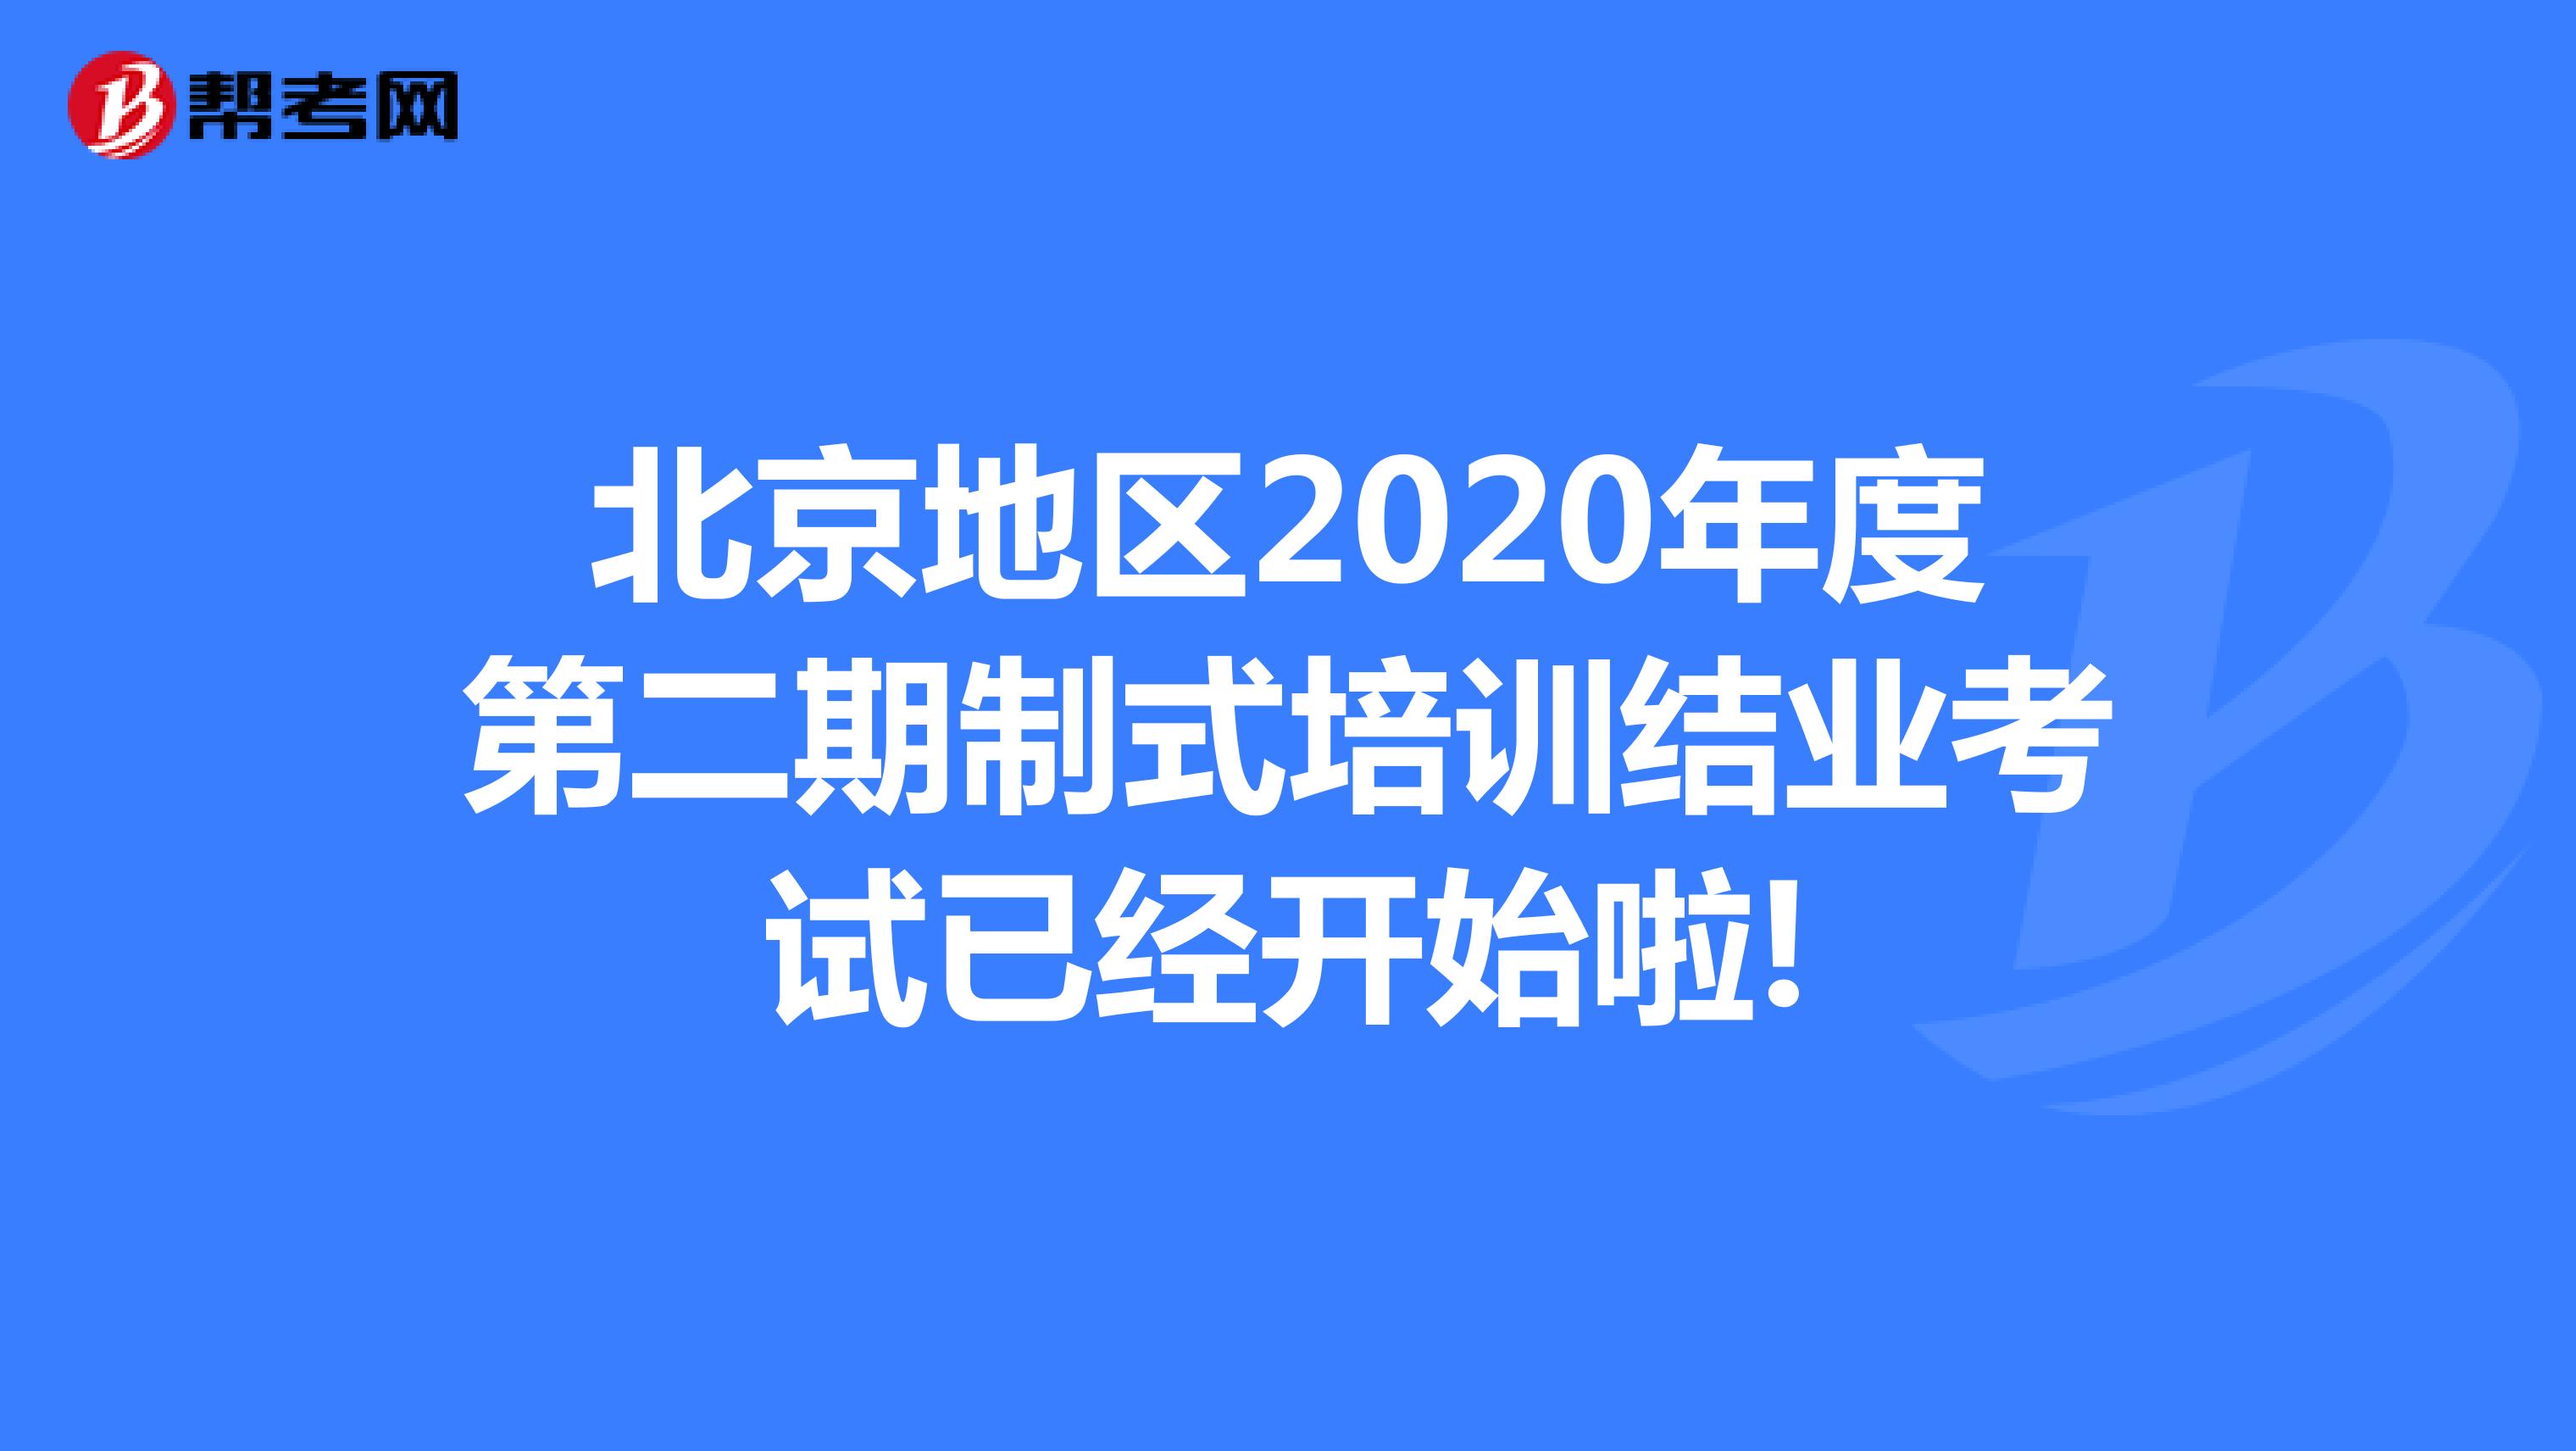 北京地区2020年度第二期制式培训结业考试已经开始啦!